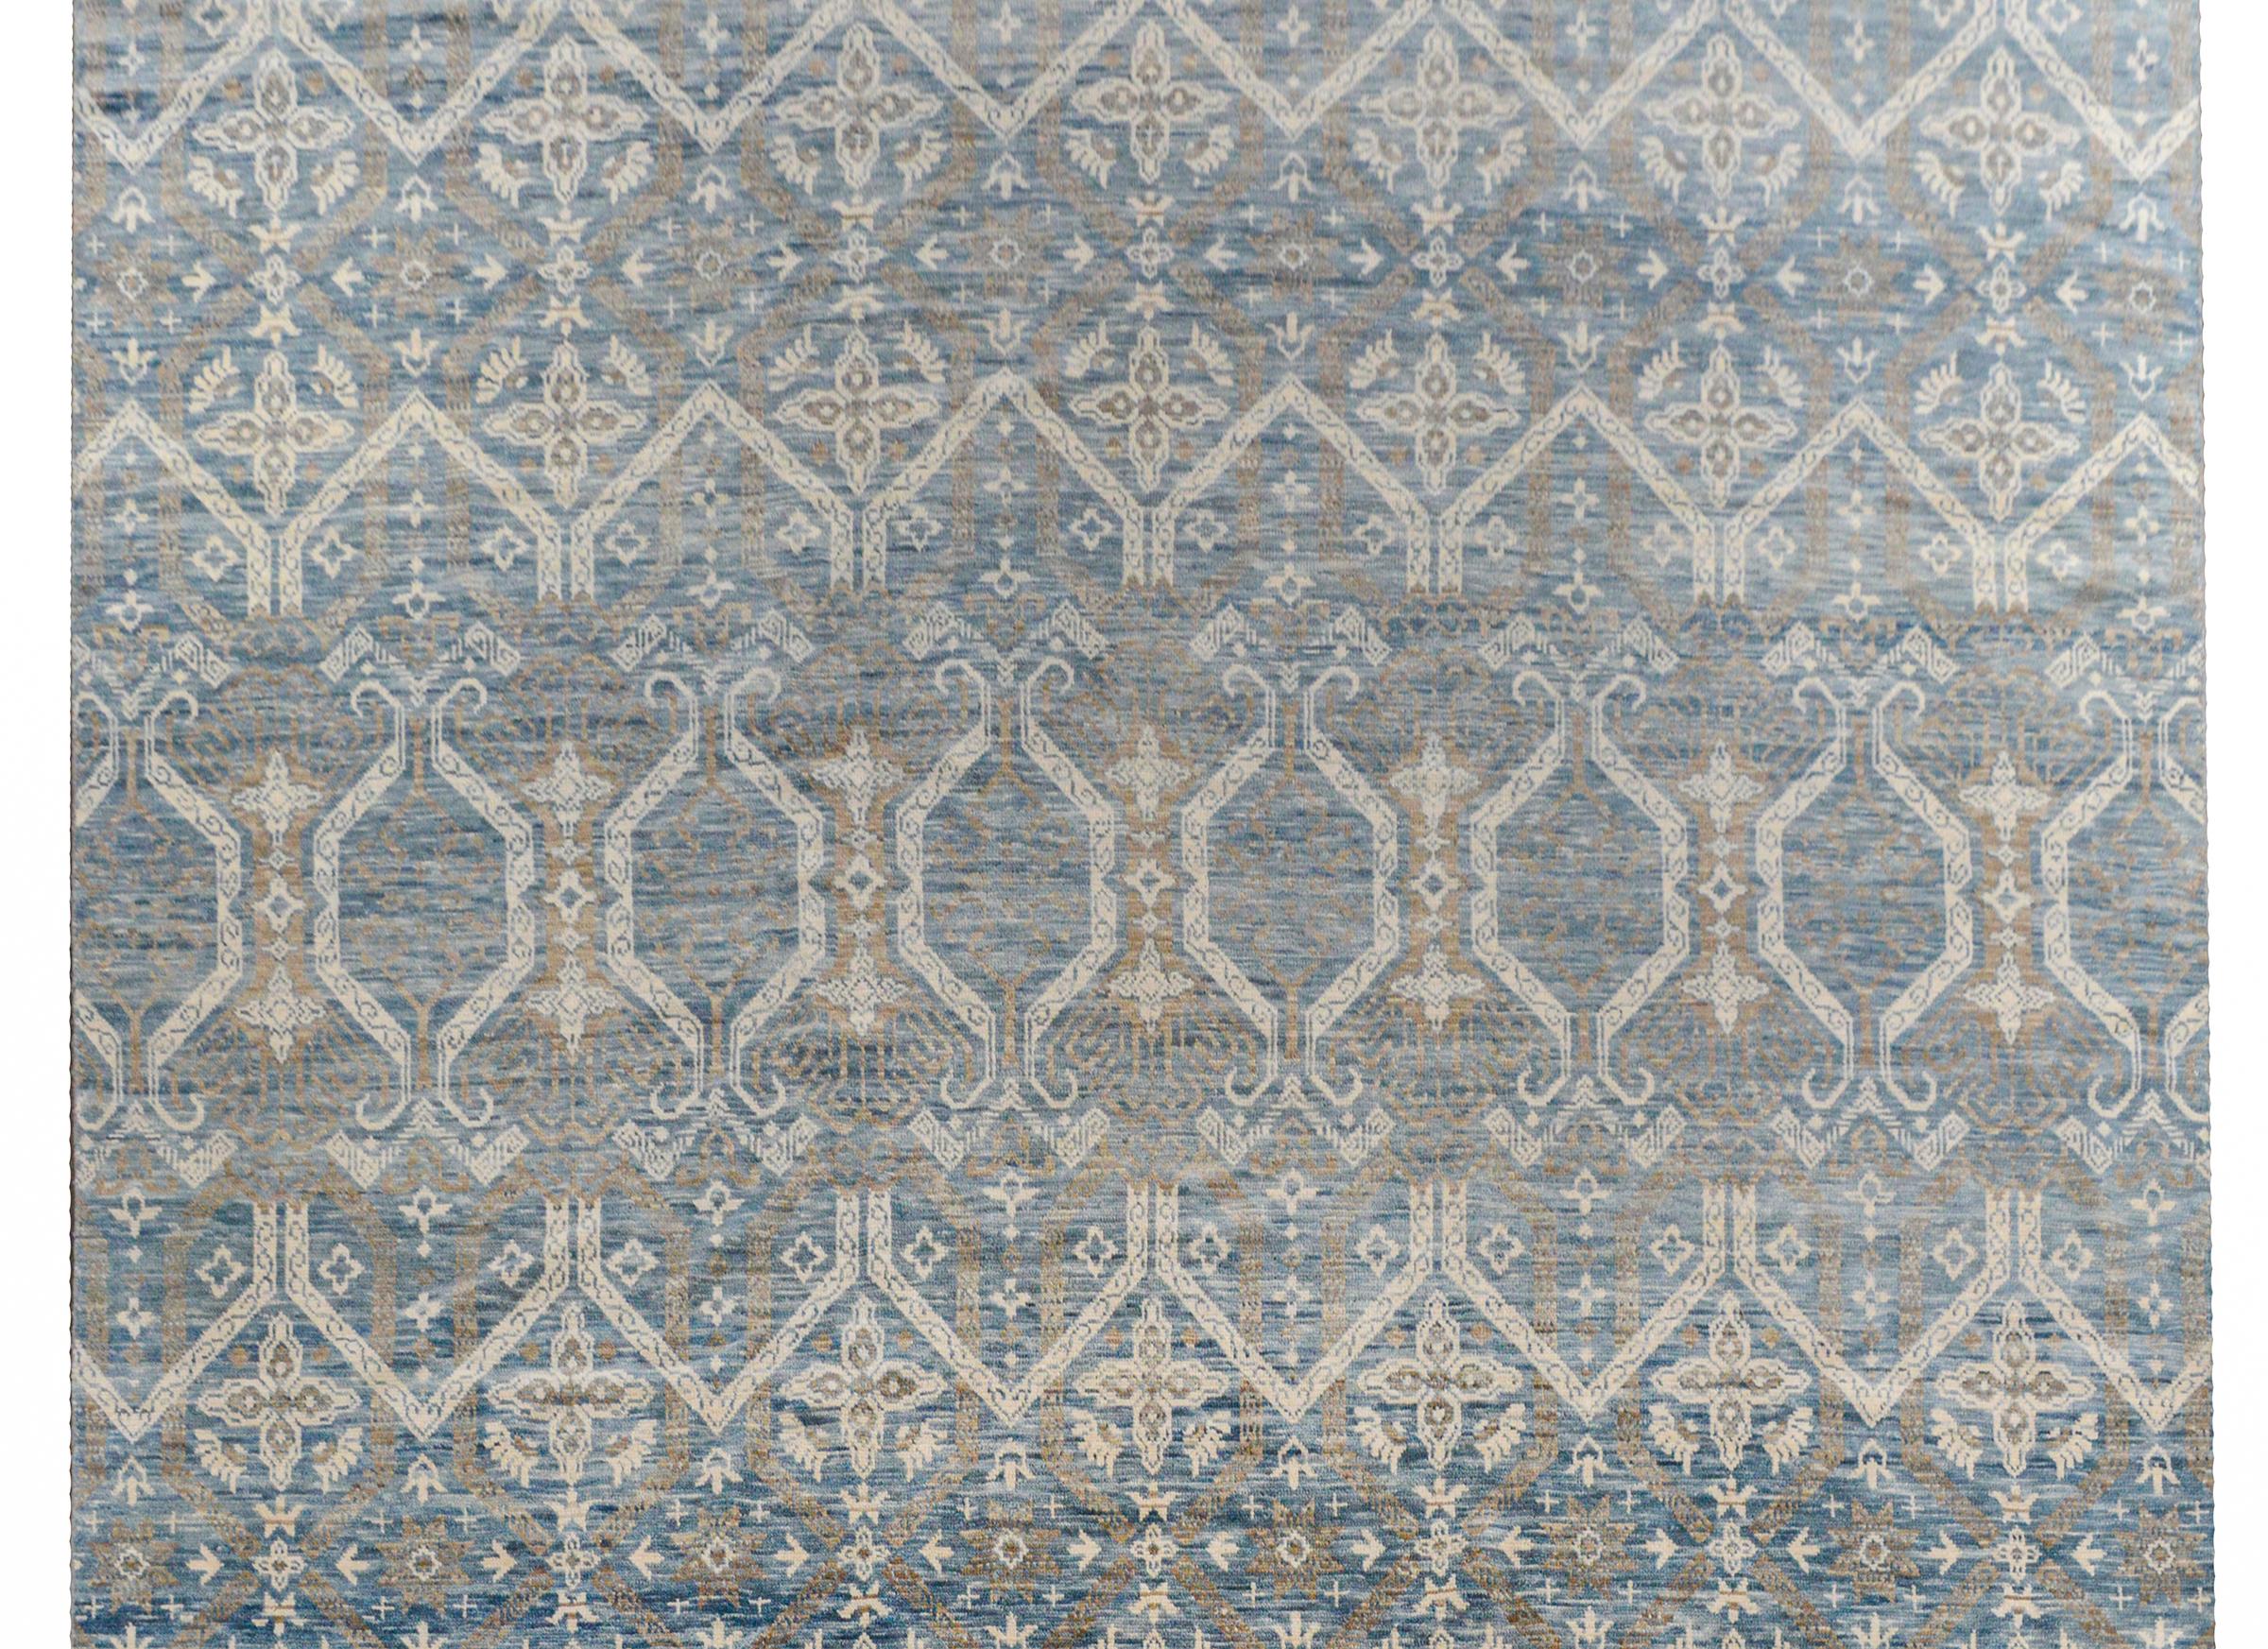 Un tapis indien contemporain serein tissé à la main avec un treillis all-over et un motif floral tissé dans de magnifiques nuances de bleu et de crème.